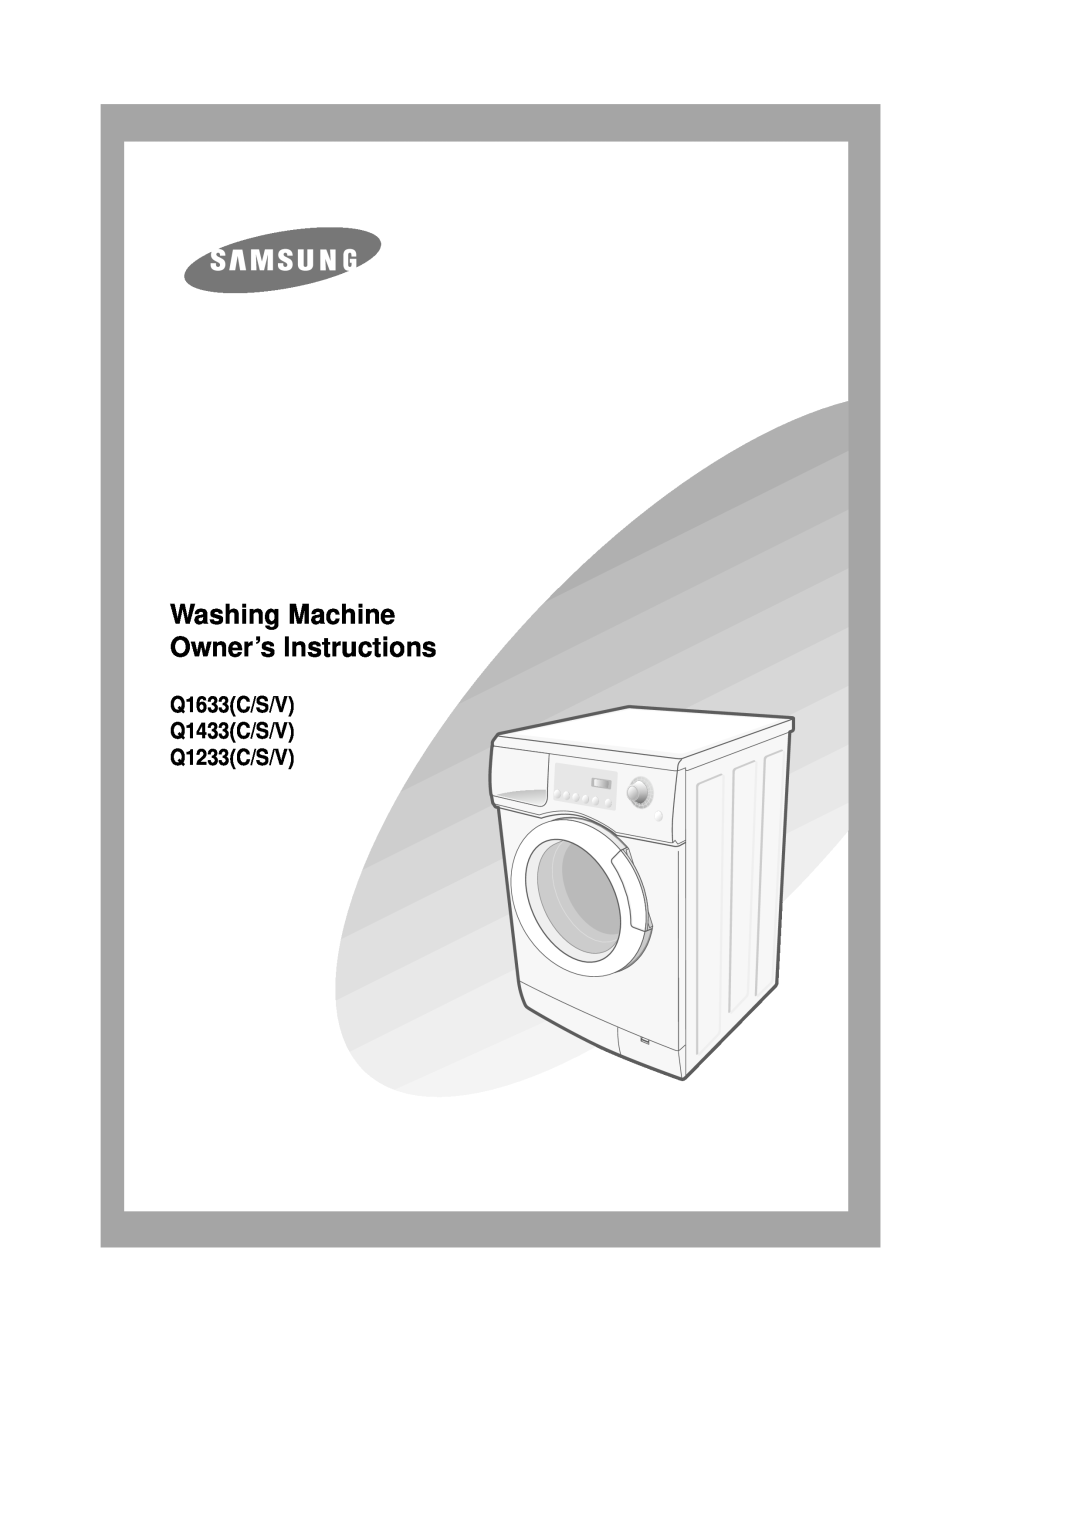 Samsung manual Washing Machine Owner’s Instructions, Q1633C/S/V Q1433C/S/V Q1233C/S/V 